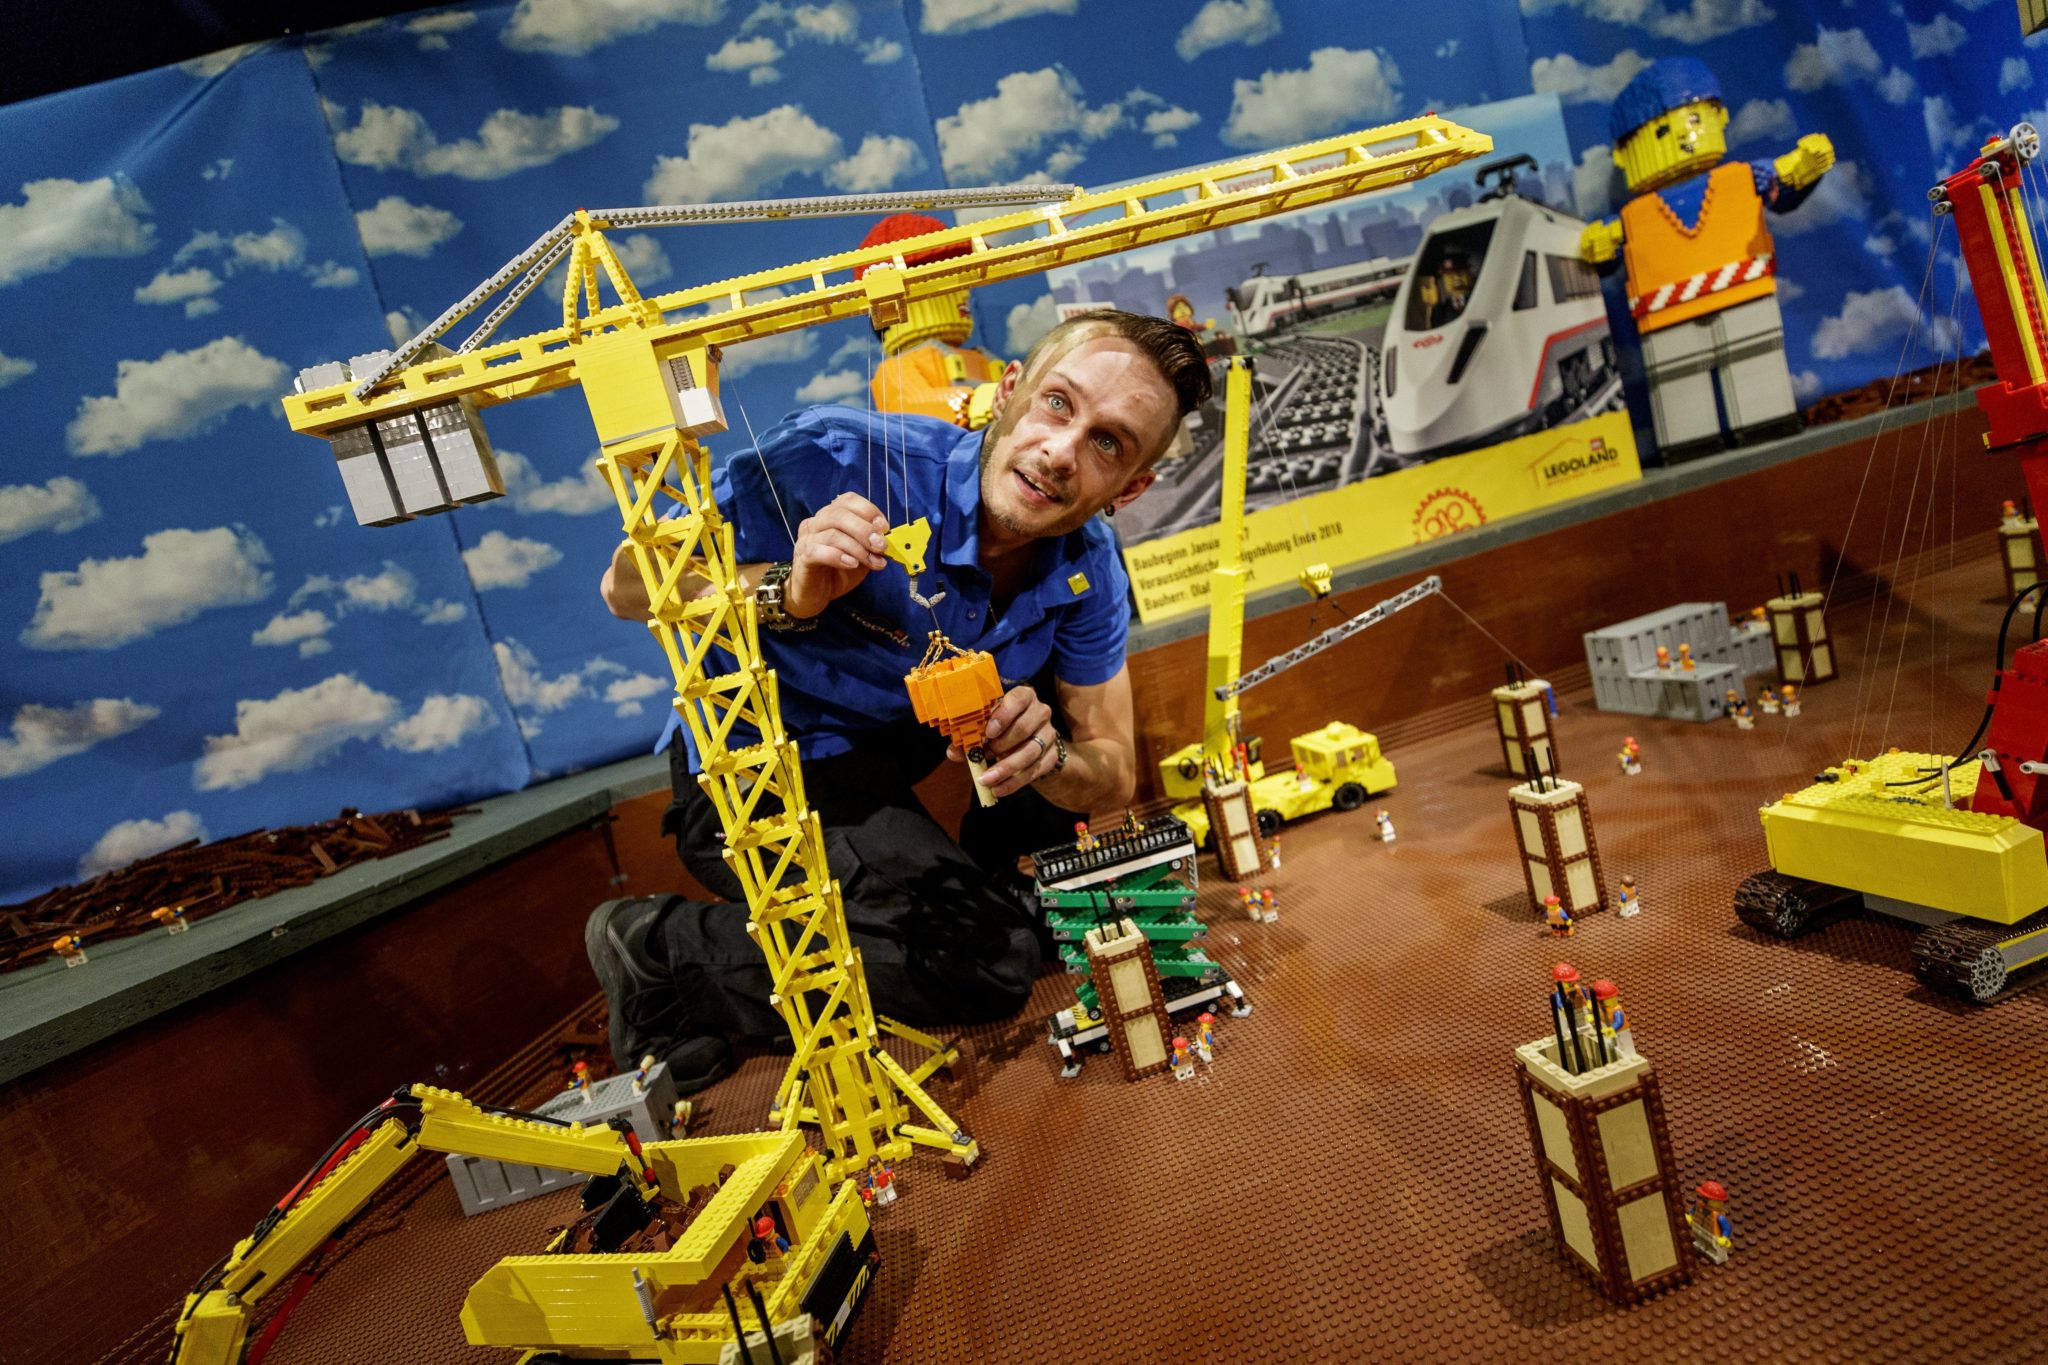 Rekonstrukcja berlińskiego dworca kolejowego w niemieckim Legolandzie